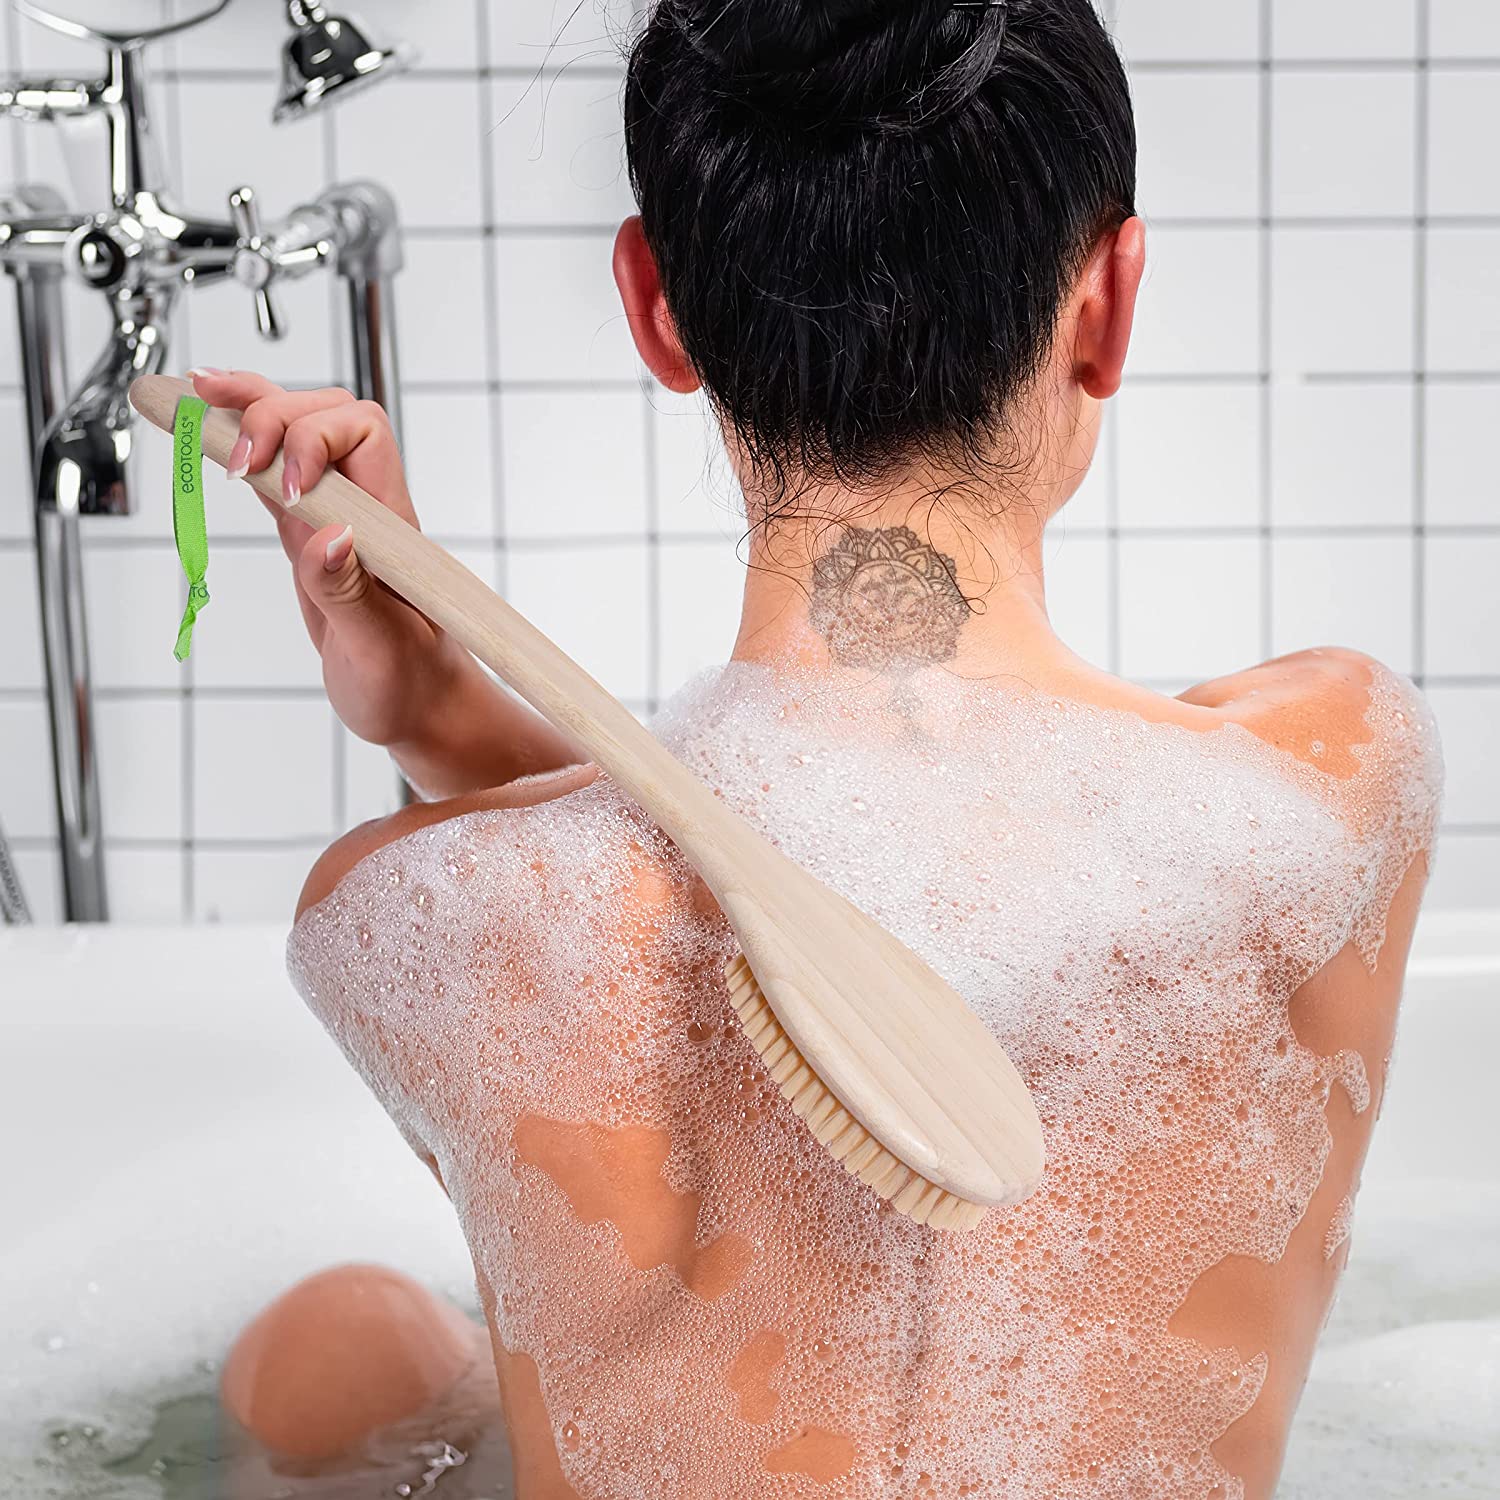 Best Back Scrubber For Shower – October 2022